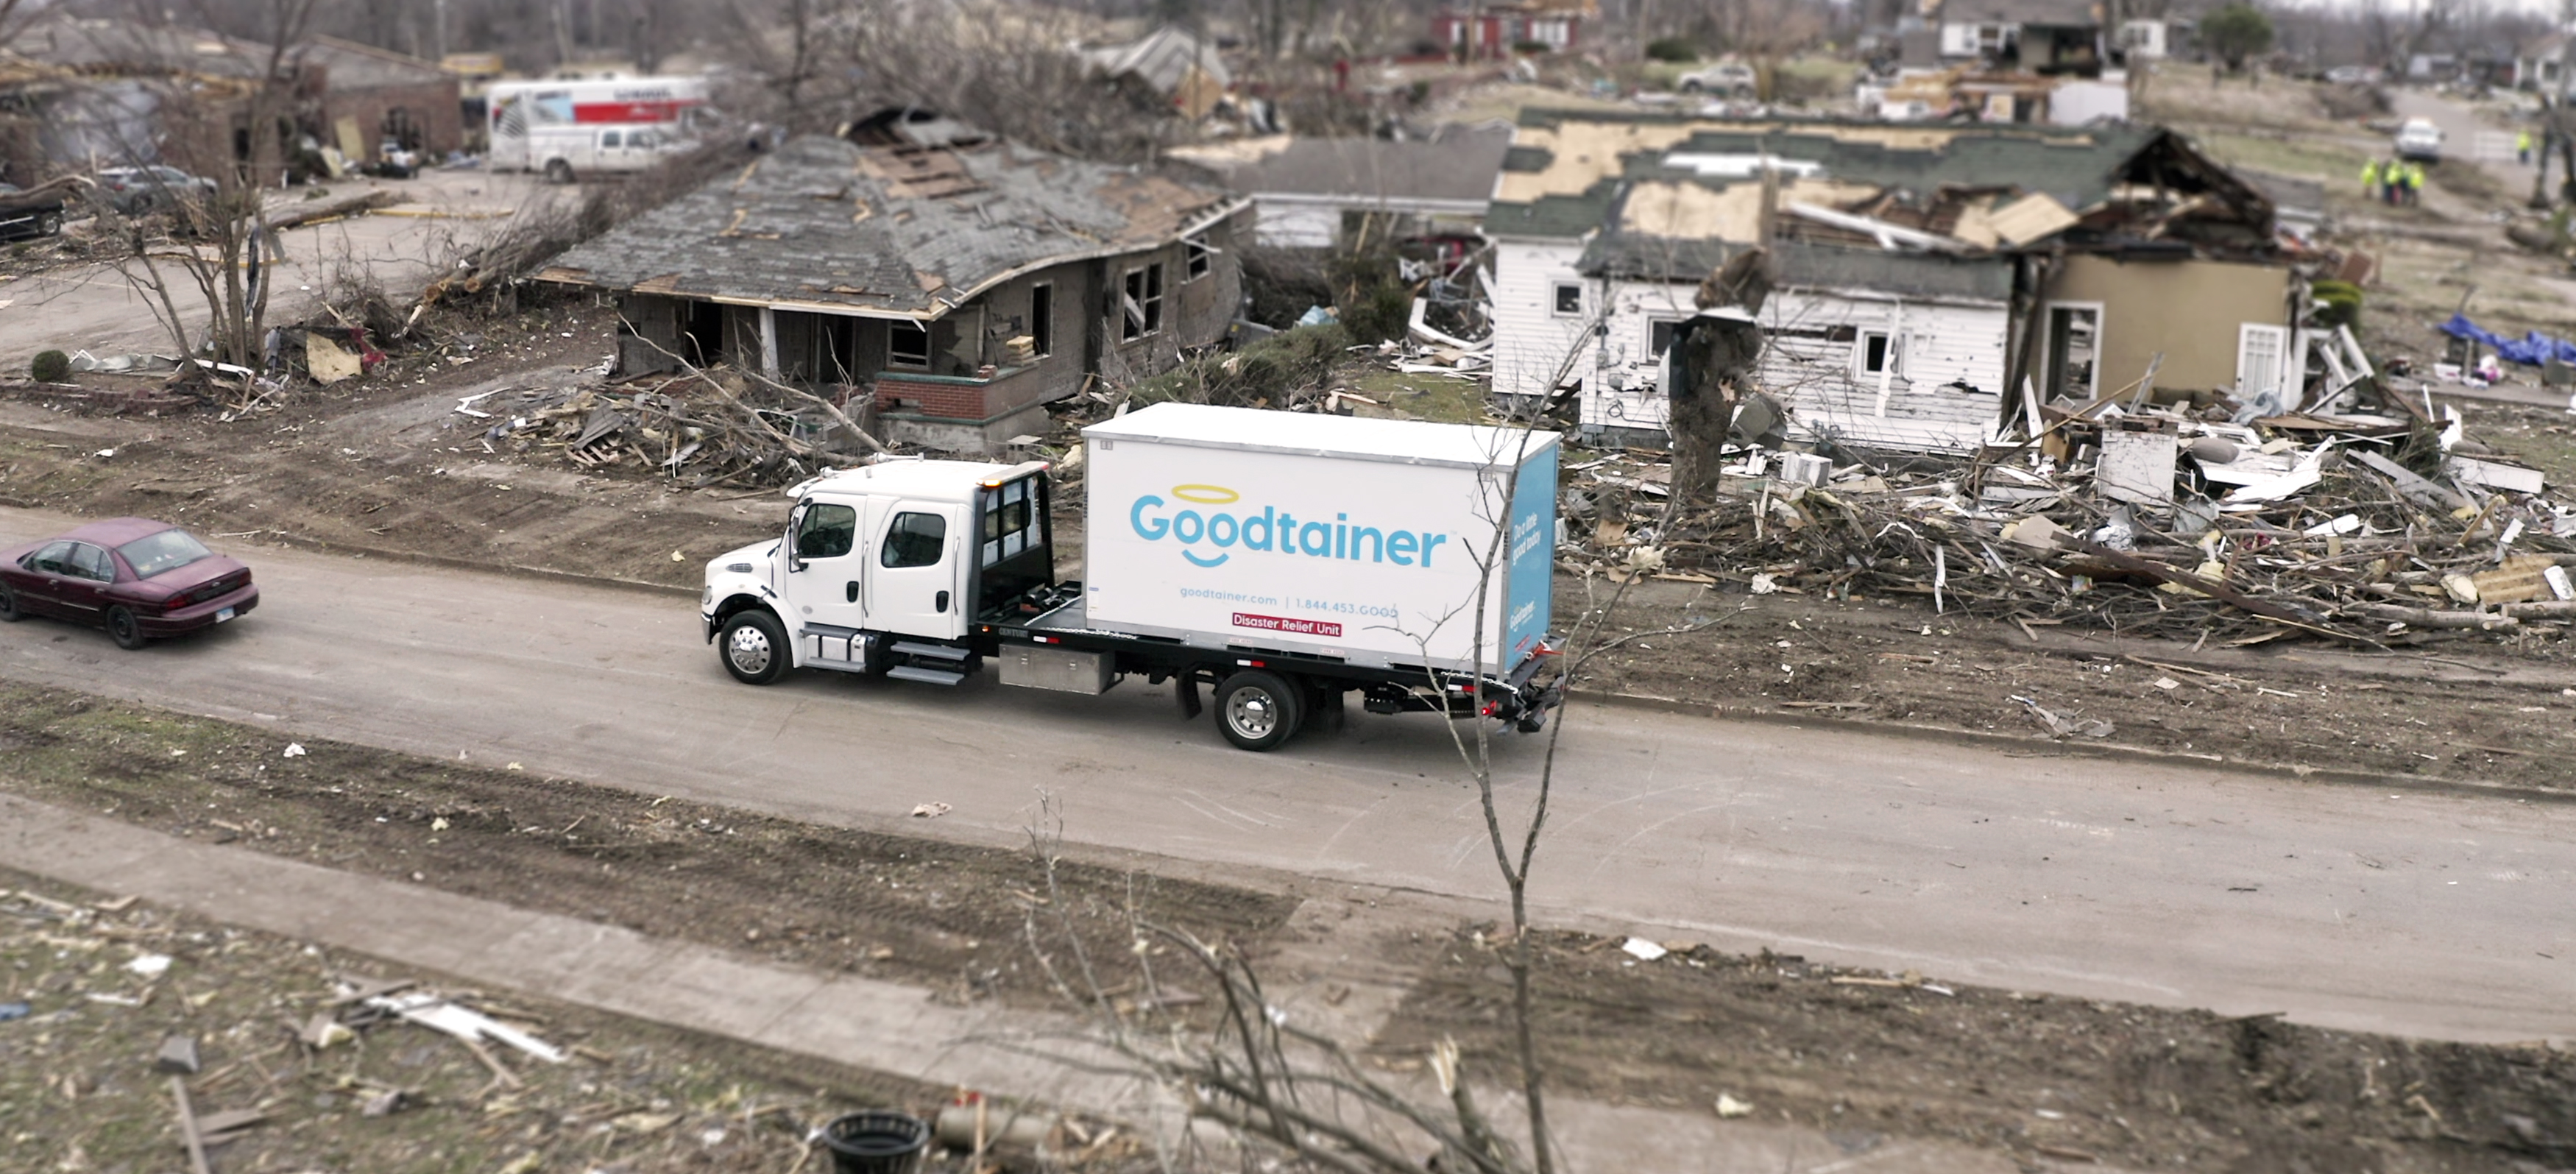 goodtainer-mayfield-kentucky-tornado-street-view-banner.jpg